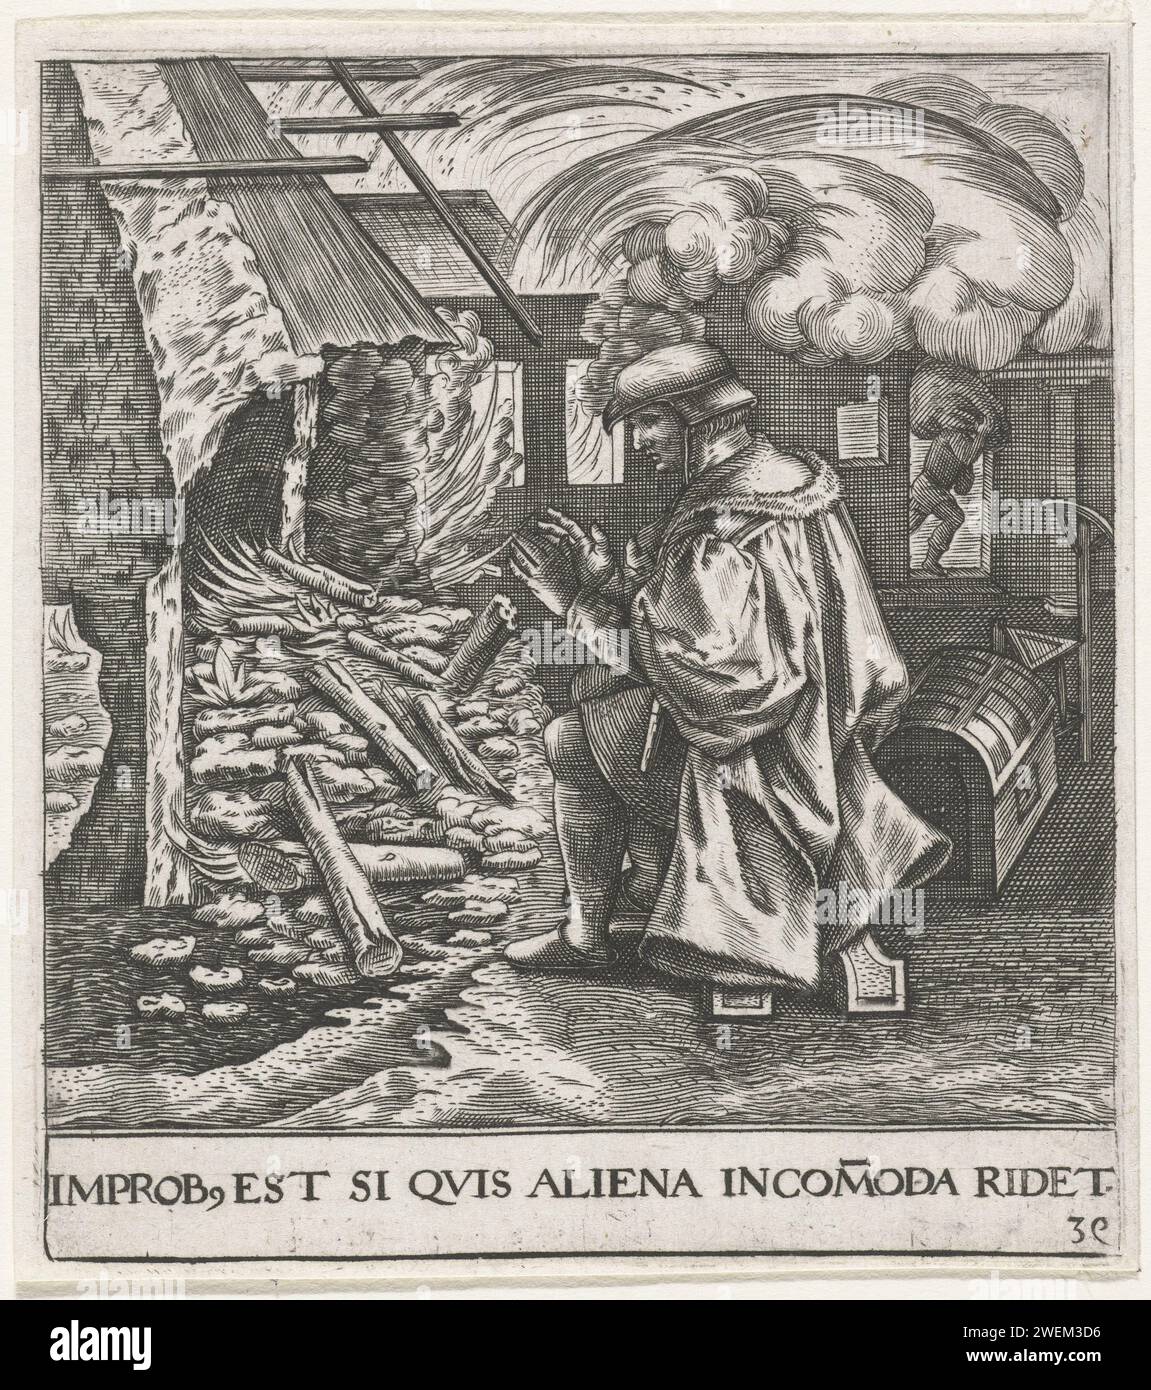 Man wärmt sich auf einem brennenden Haus, Johann Theodor de Bry, nach Anonymous, nach Pieter Bruegel (I), 1596 Druck Ein Mann wärmt sich am Feuer eines brennenden Hauses. Zu einem der 'runden Sprüche' von Bruegel:' er und vieles von dessen Haus brennt, solange er sich an der Kohle erwärmt', mit dem Bruegel seine eigenen und unklaren anprangern will. Papierstich Existenz und Existenzmodi (+ emblematische Darstellung des Begriffs). Egoismus; Interesse, Interesse proprio (Ripa). Sich am Feuer erwärmen (oder Herd, Herd, Feuerpfanne, Brazier). Feuer, Feuer Stockfoto